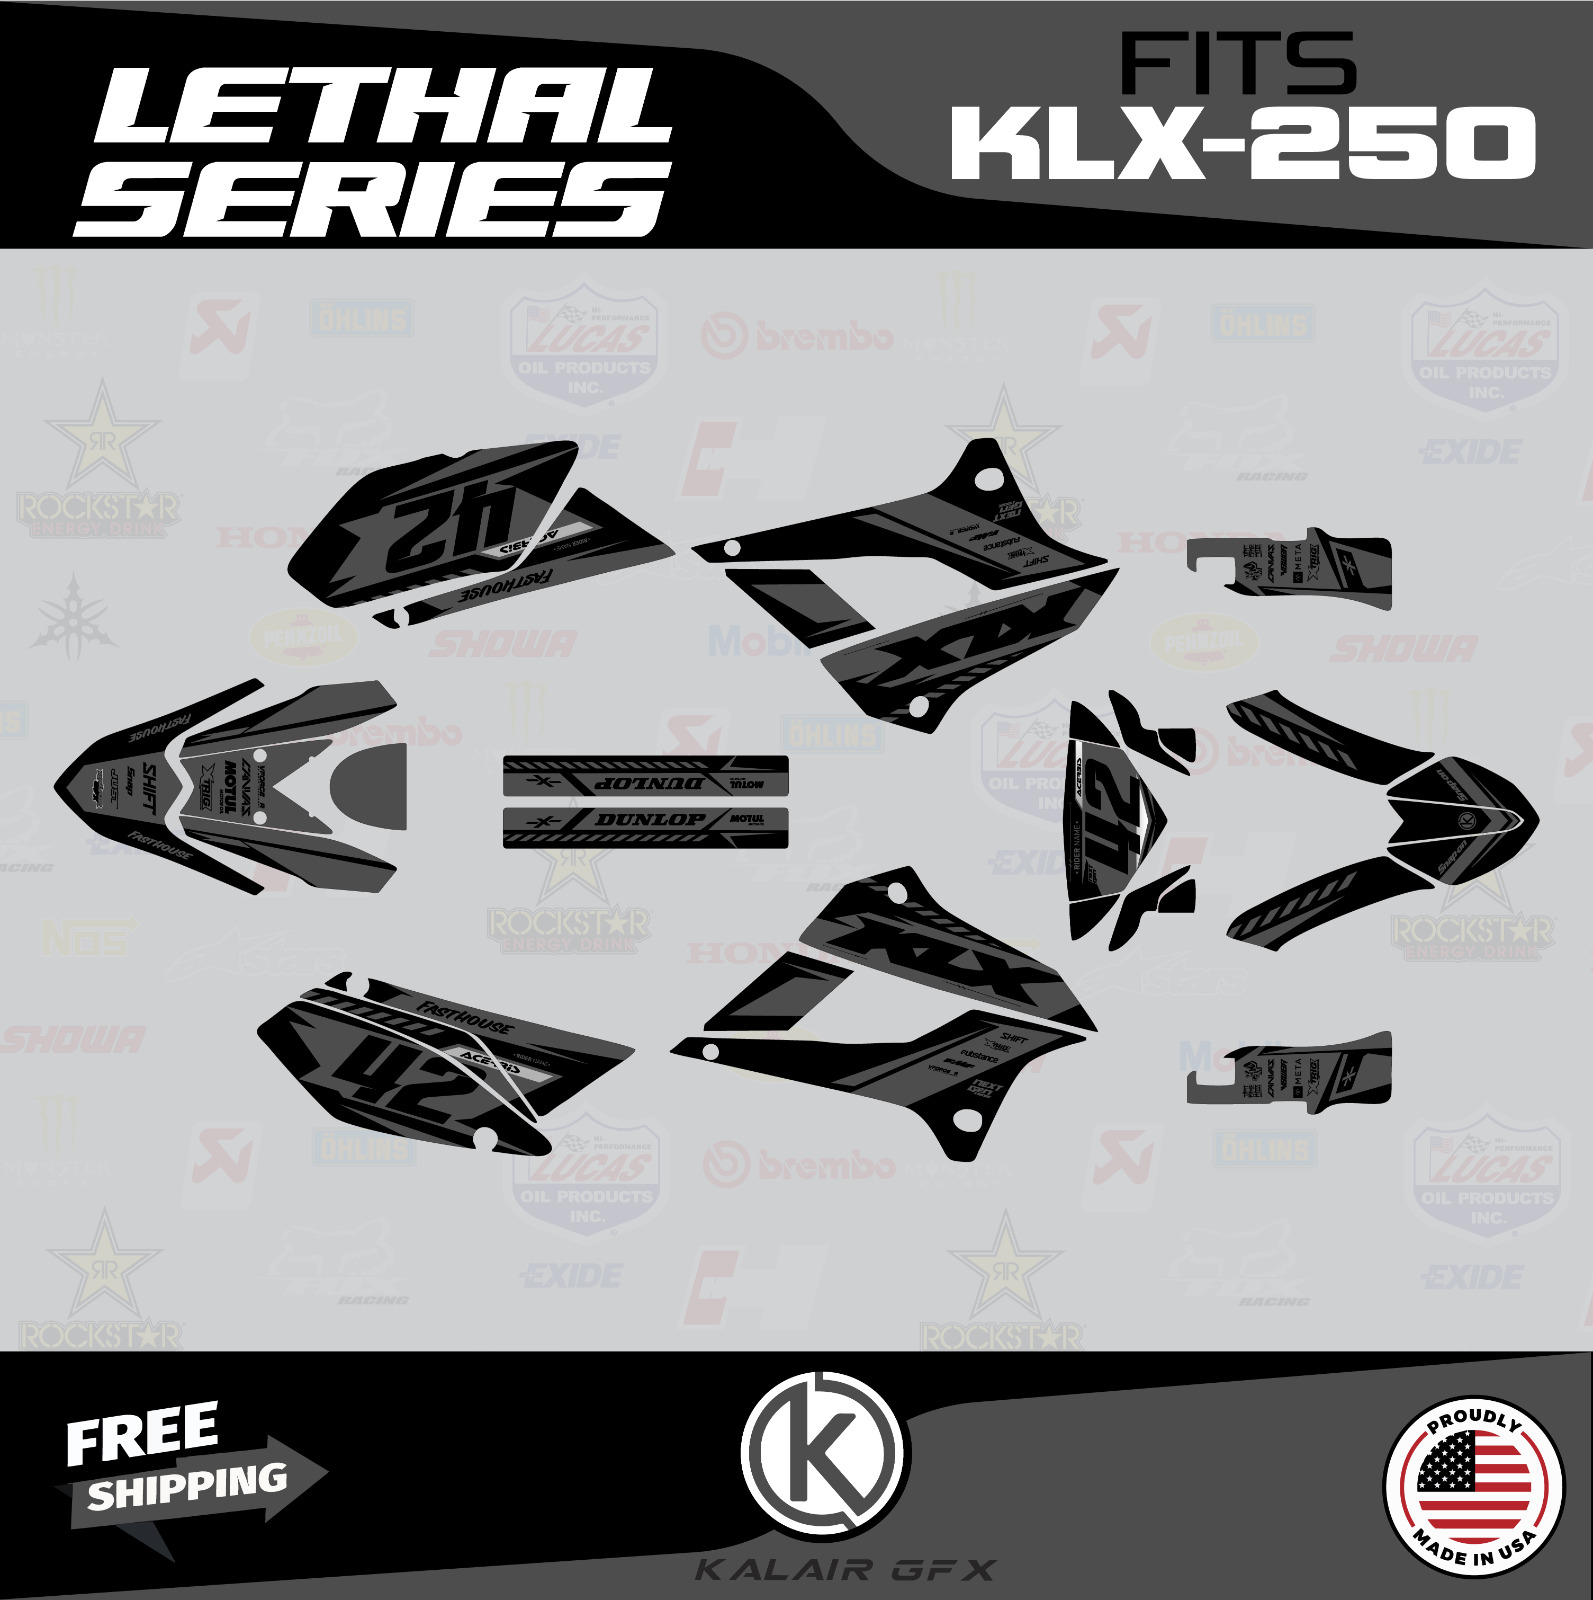 Graphics Kit for Kawasaki KLX250 (2008-2020) KLX 250 Lethal Series - Smoke